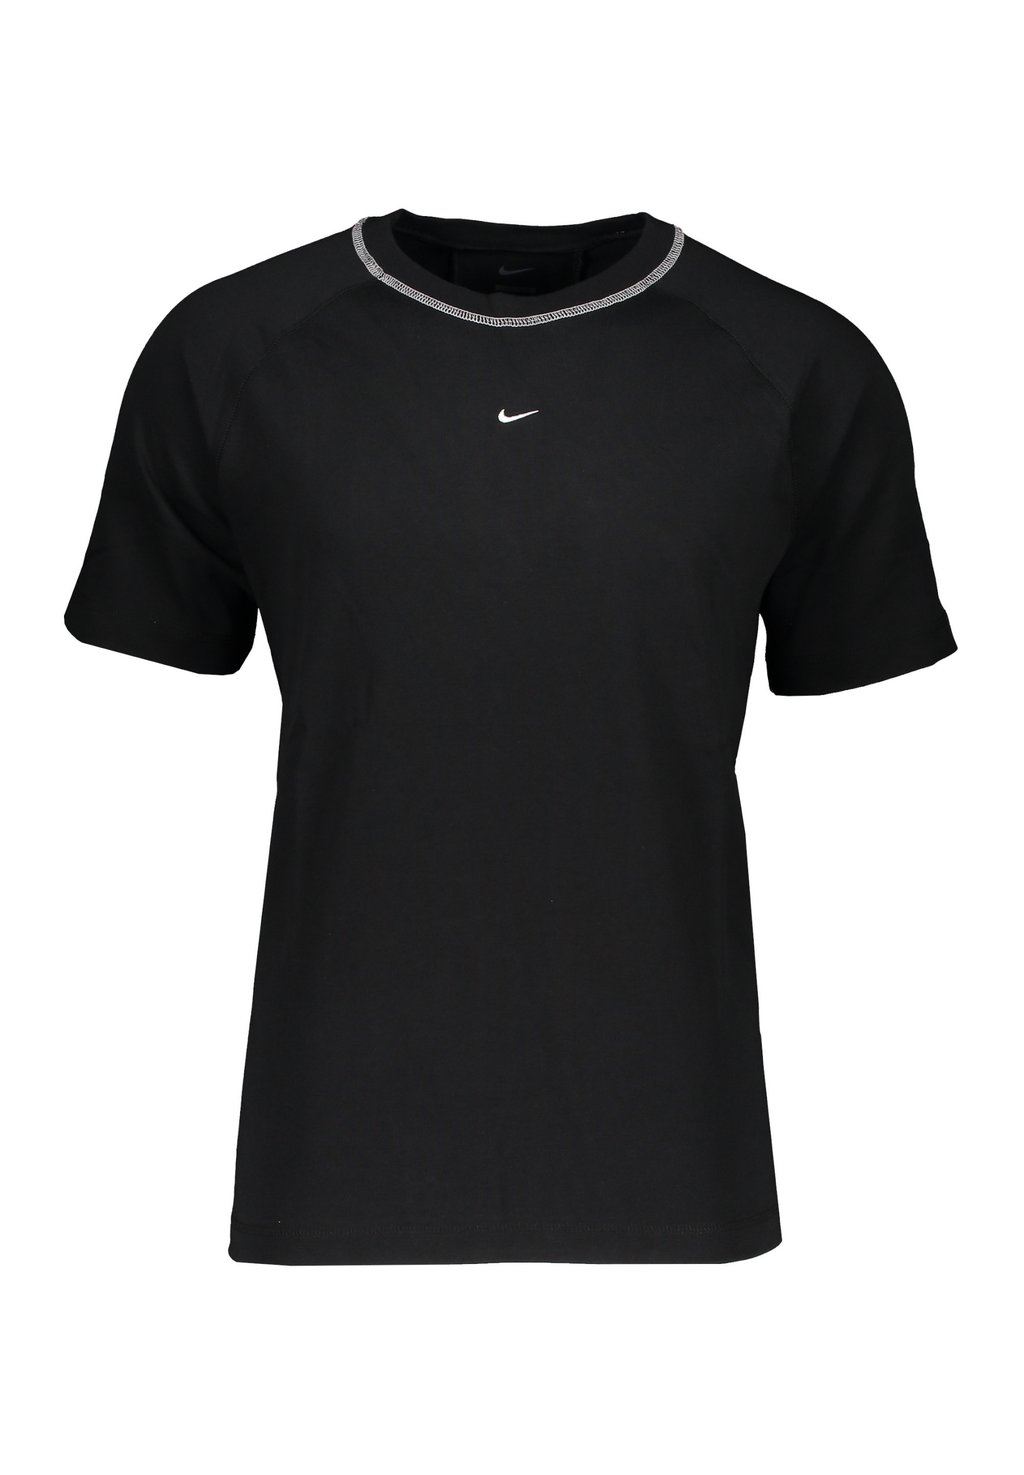 Футболка базовая FUSSBALL STRIKE Nike, цвет schwarzweissweiss